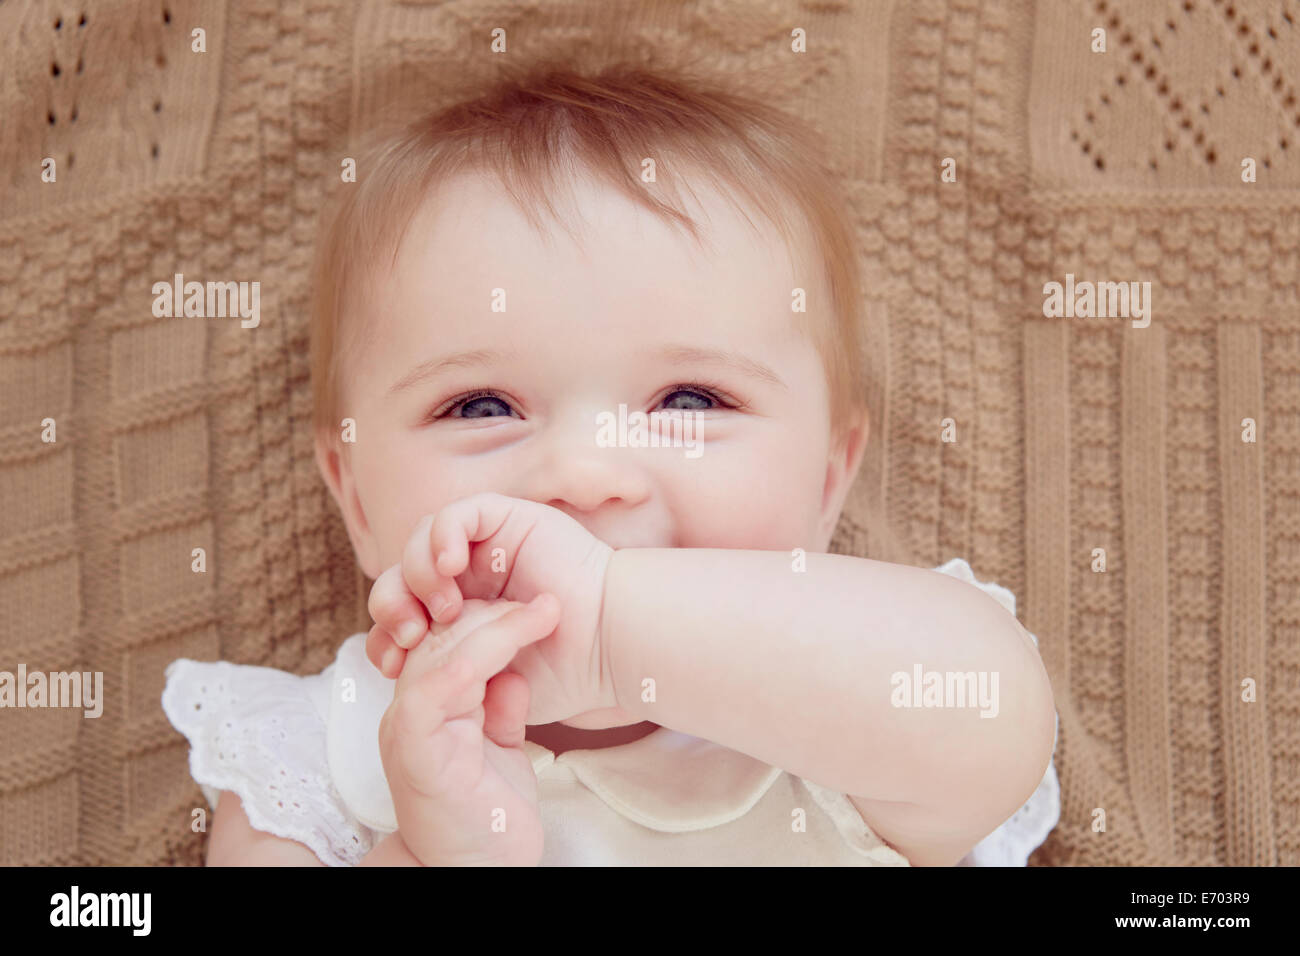 Close Up retrato de niña sonriente acostada sobre una manta Foto de stock